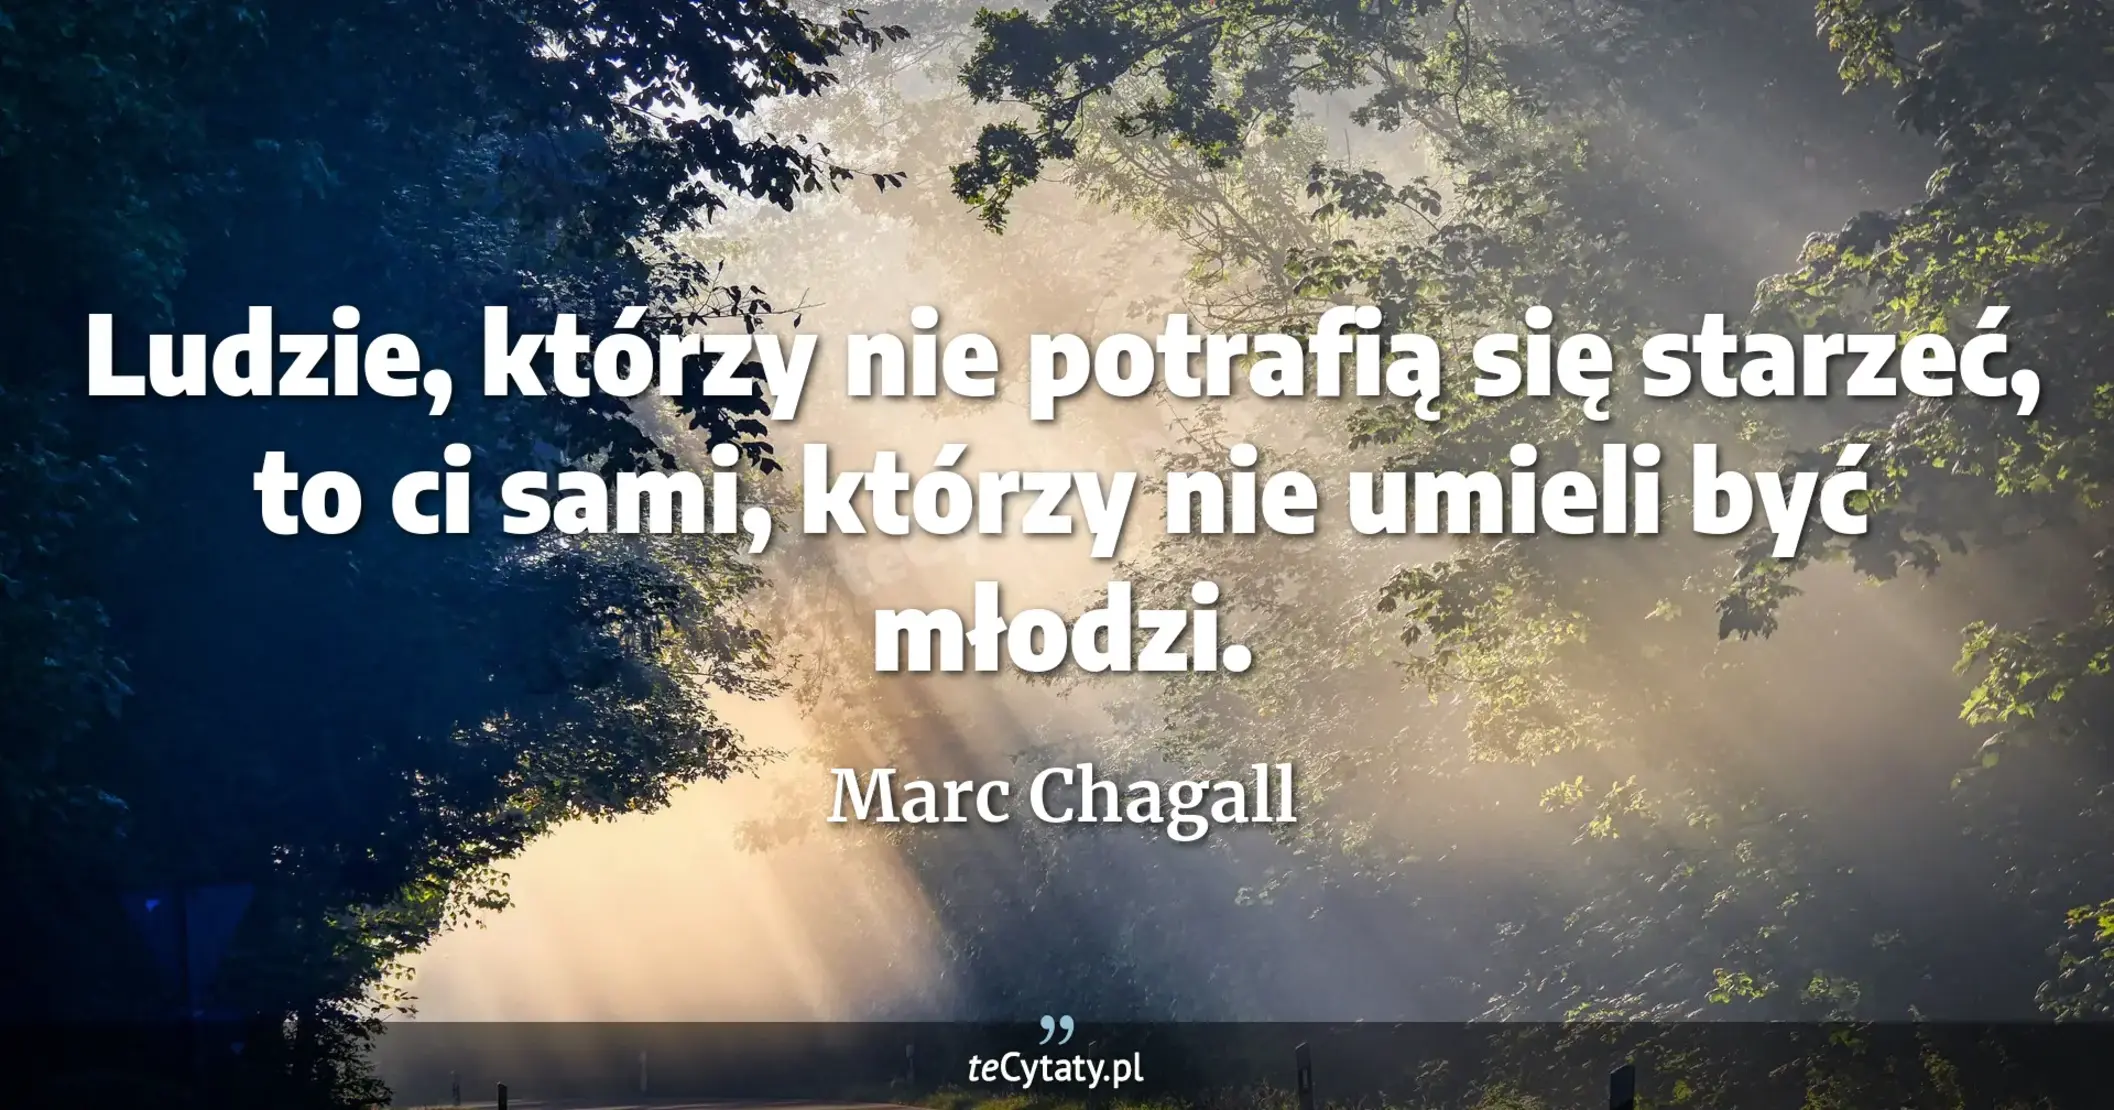 Ludzie, którzy nie potrafią się starzeć, to ci sami, którzy nie umieli być młodzi. - Marc Chagall